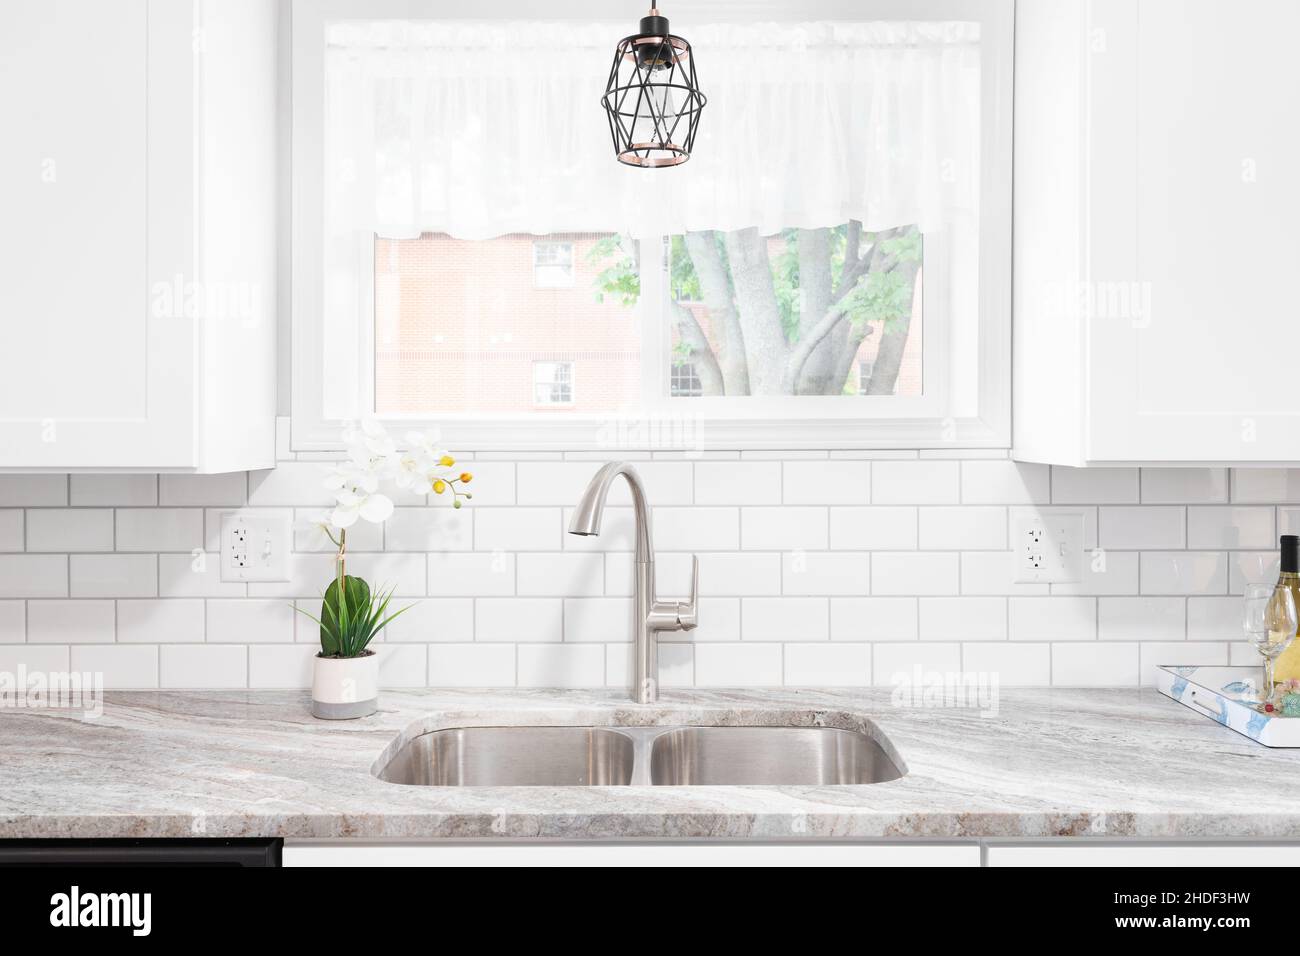 Le détail de l'évier de cuisine est réalisé avec un comptoir en marbre, des  armoires blanches, un robinet et un évier en acier inoxydable et une  lumière suspendue devant la fenêtre Photo